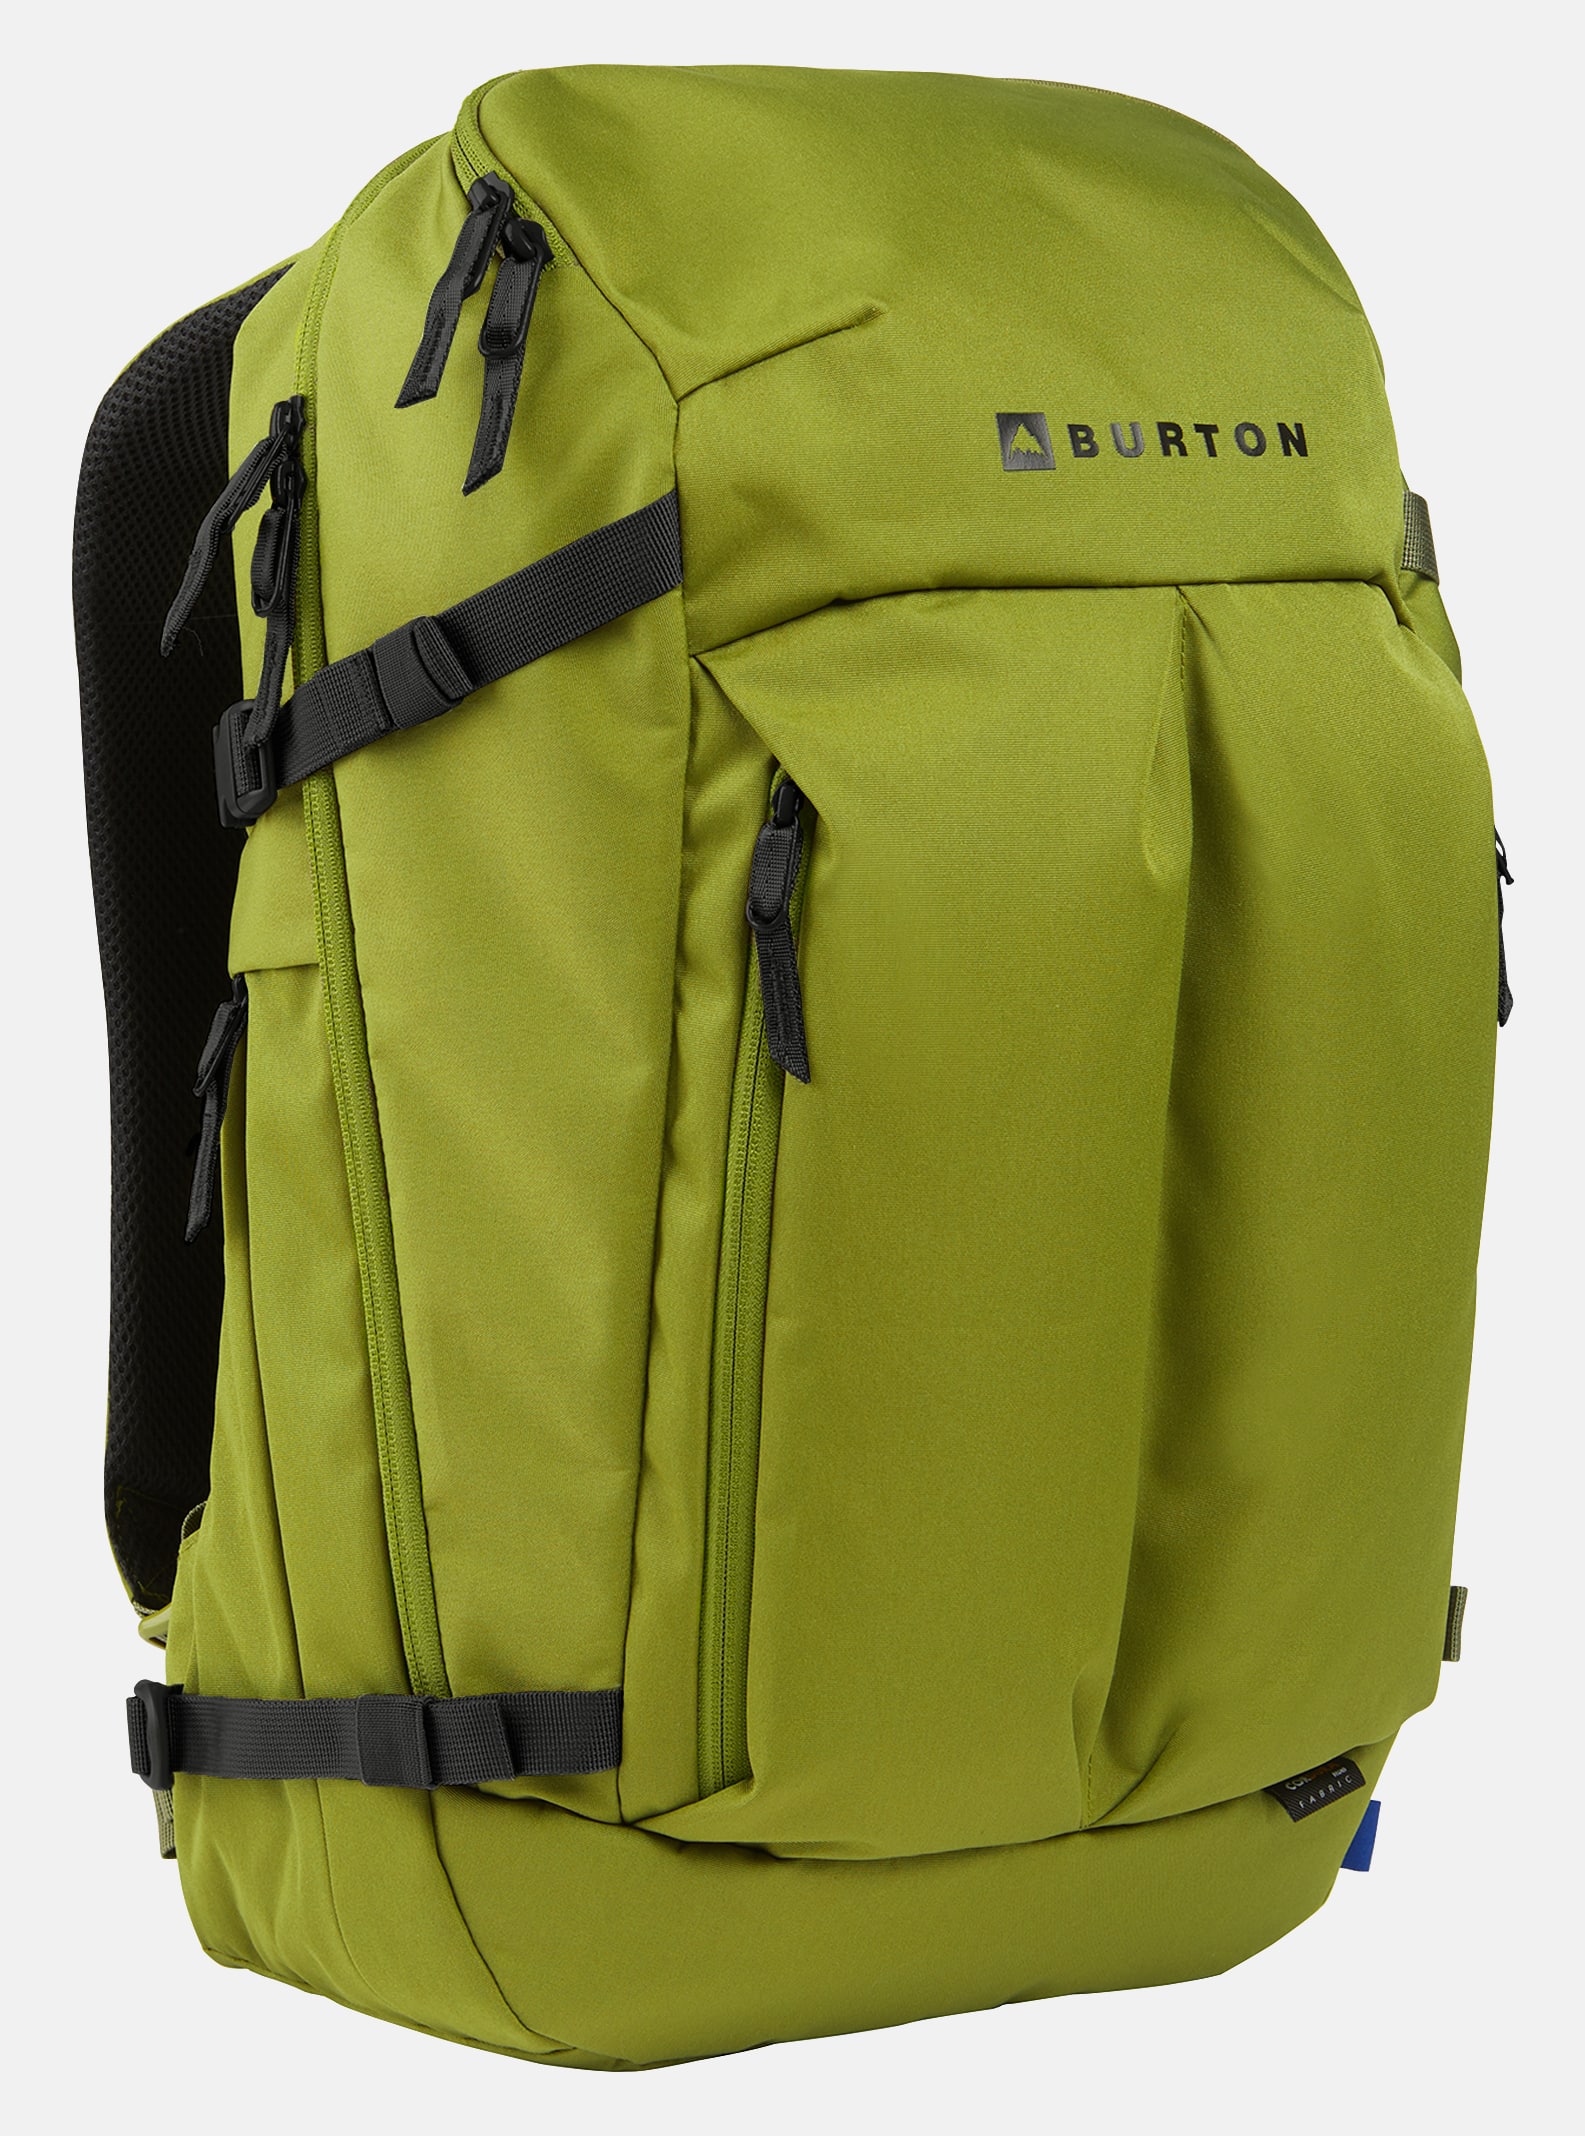 Outdoor & Snowboard Backpacks | Burton Snowboards DE